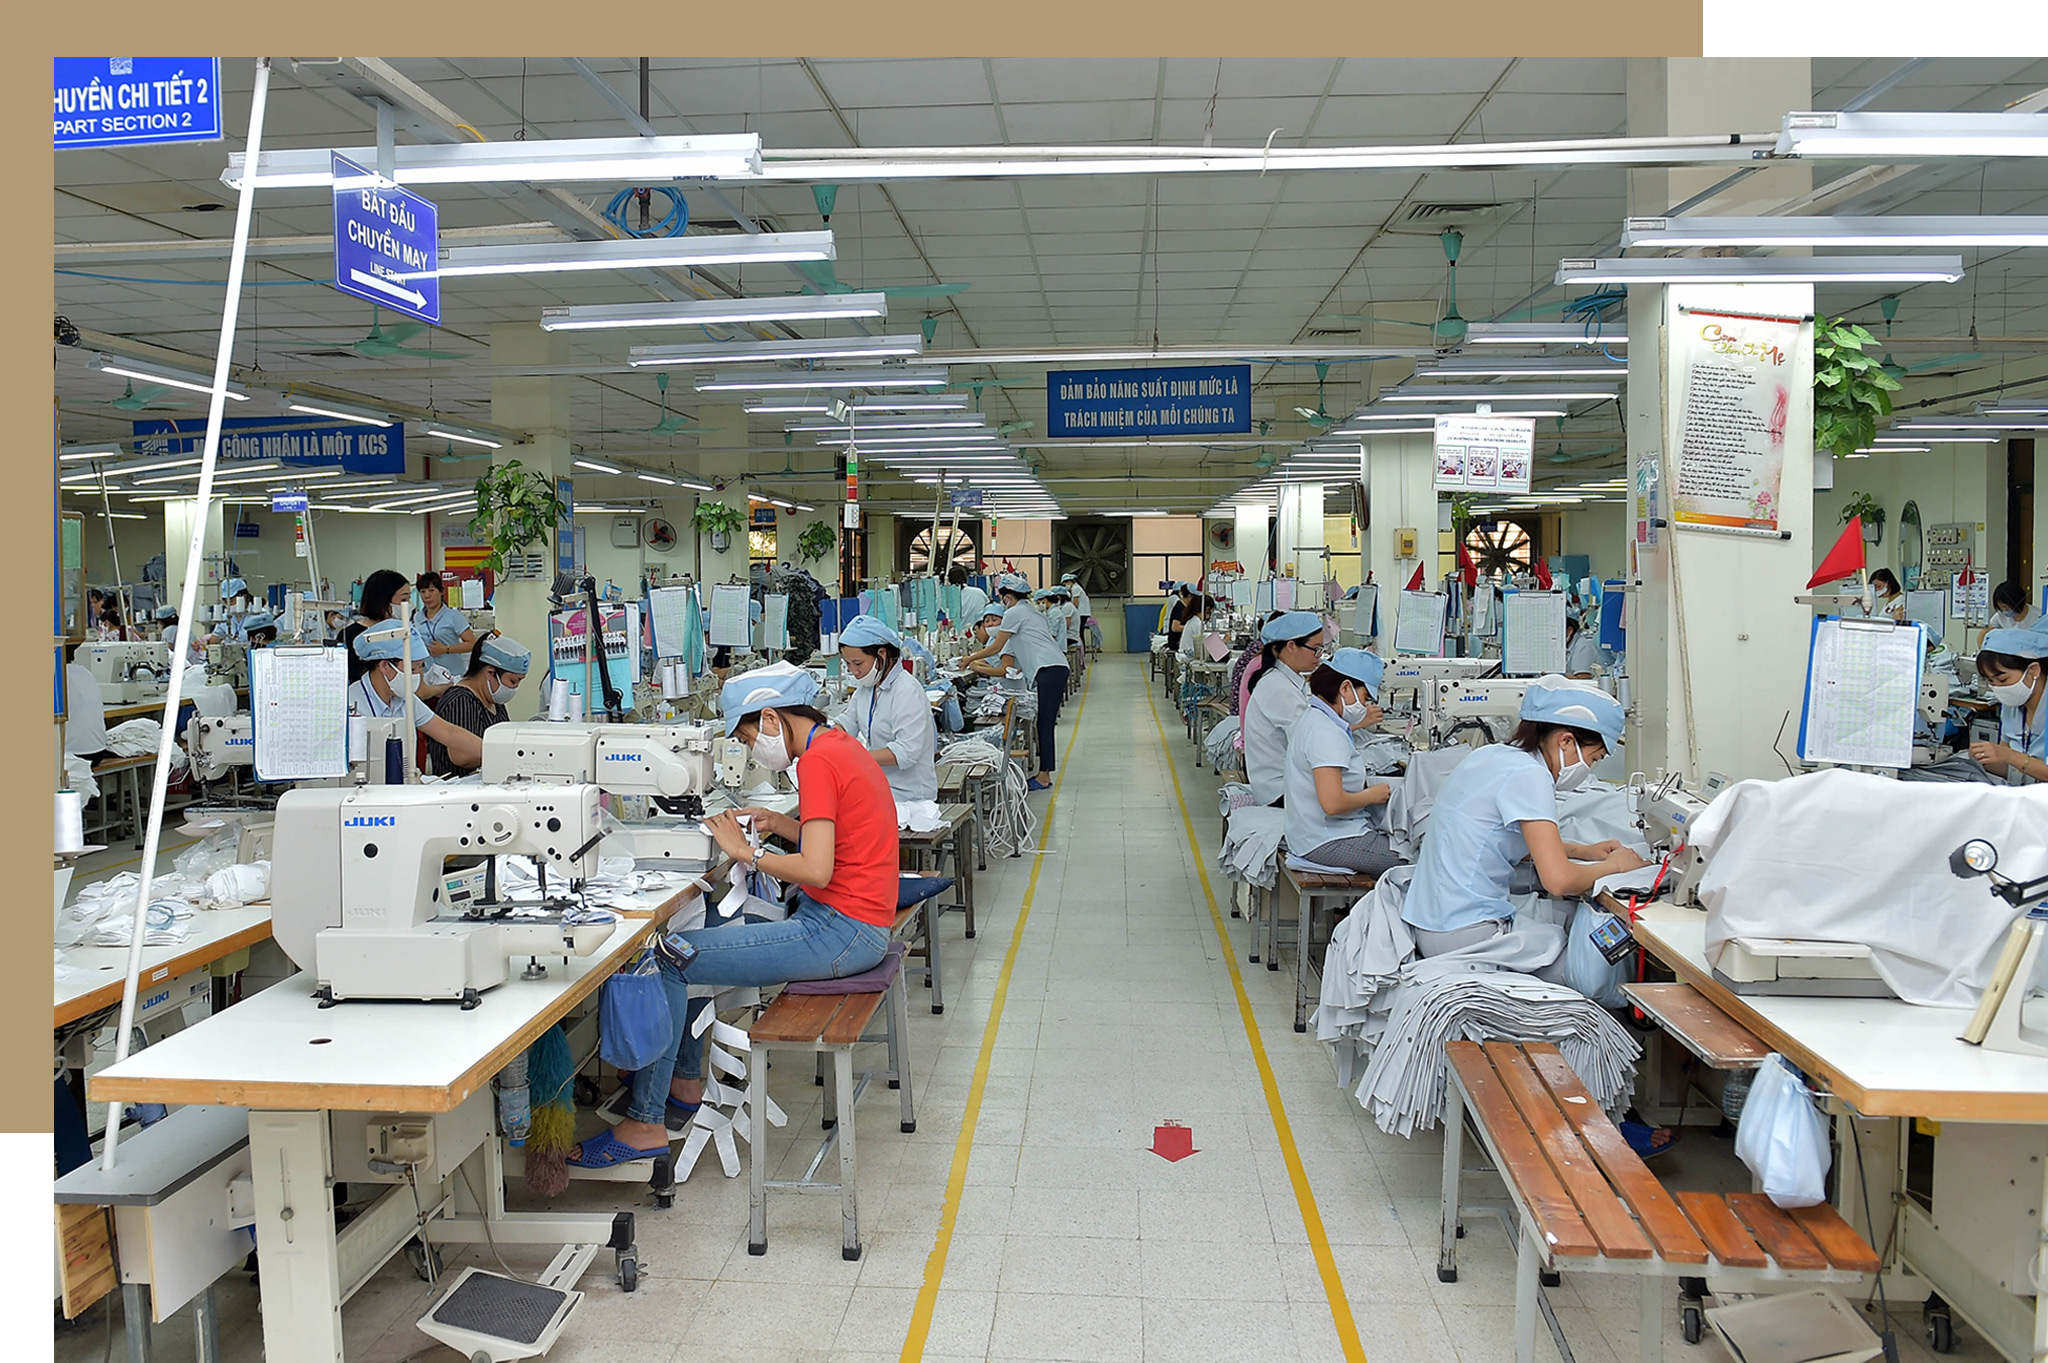 La productividad laboral en la industria textil se ha mejorado gracias a la aplicación de las tecnologías avanzadas. (Fuente: VNA)